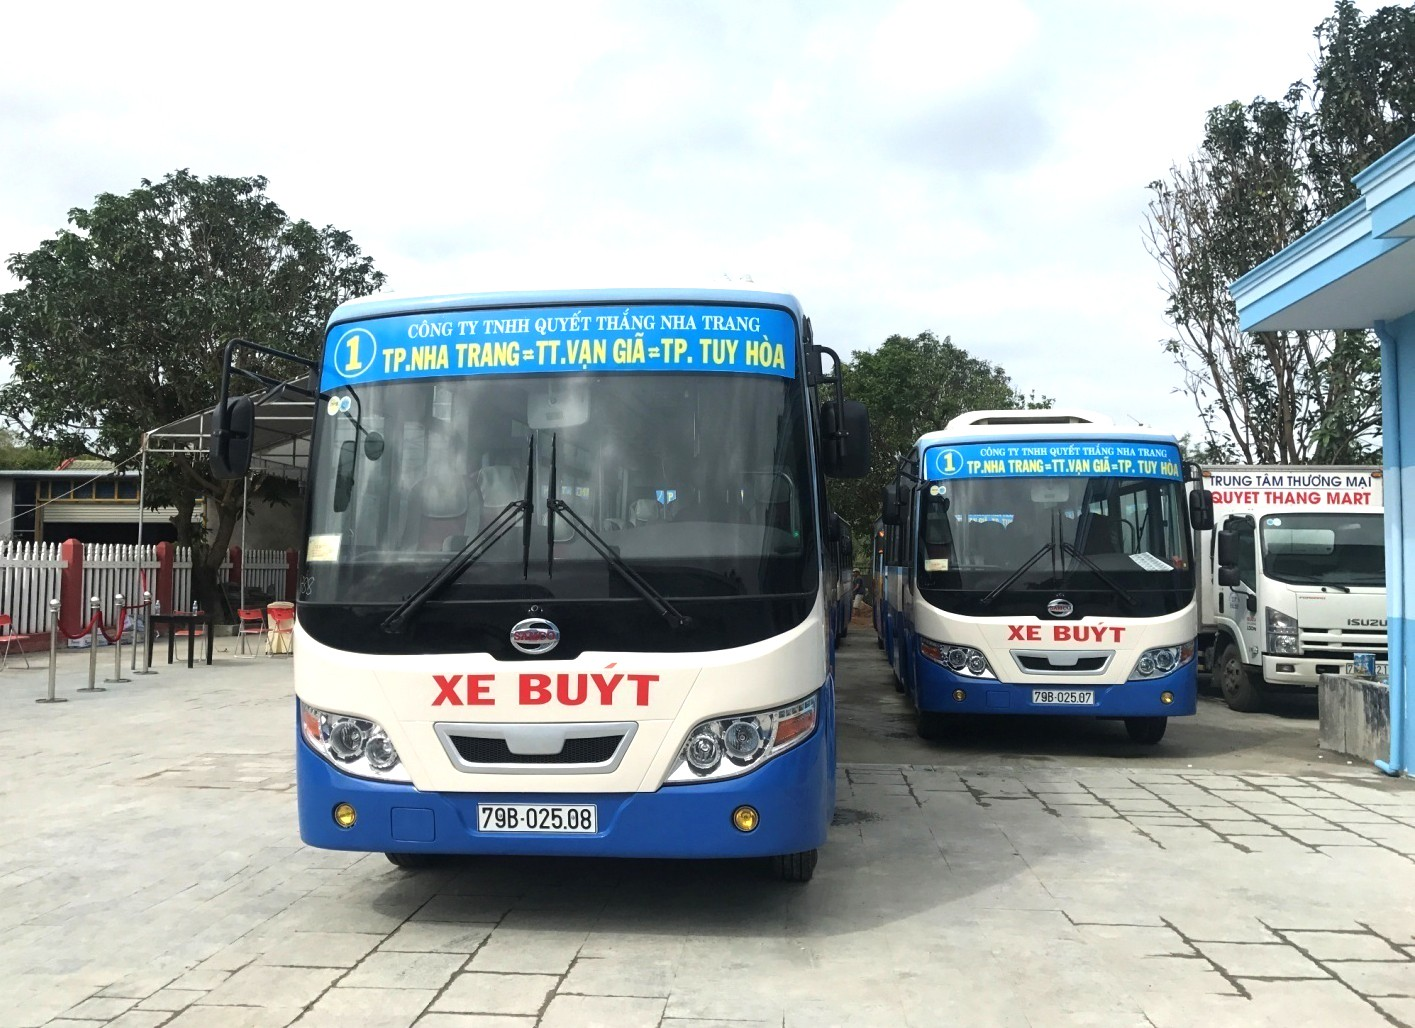 Di chuyển bằng xe bus để đến các địa điểm vui chơi tại Nha Trang (Nguồn: Internet)